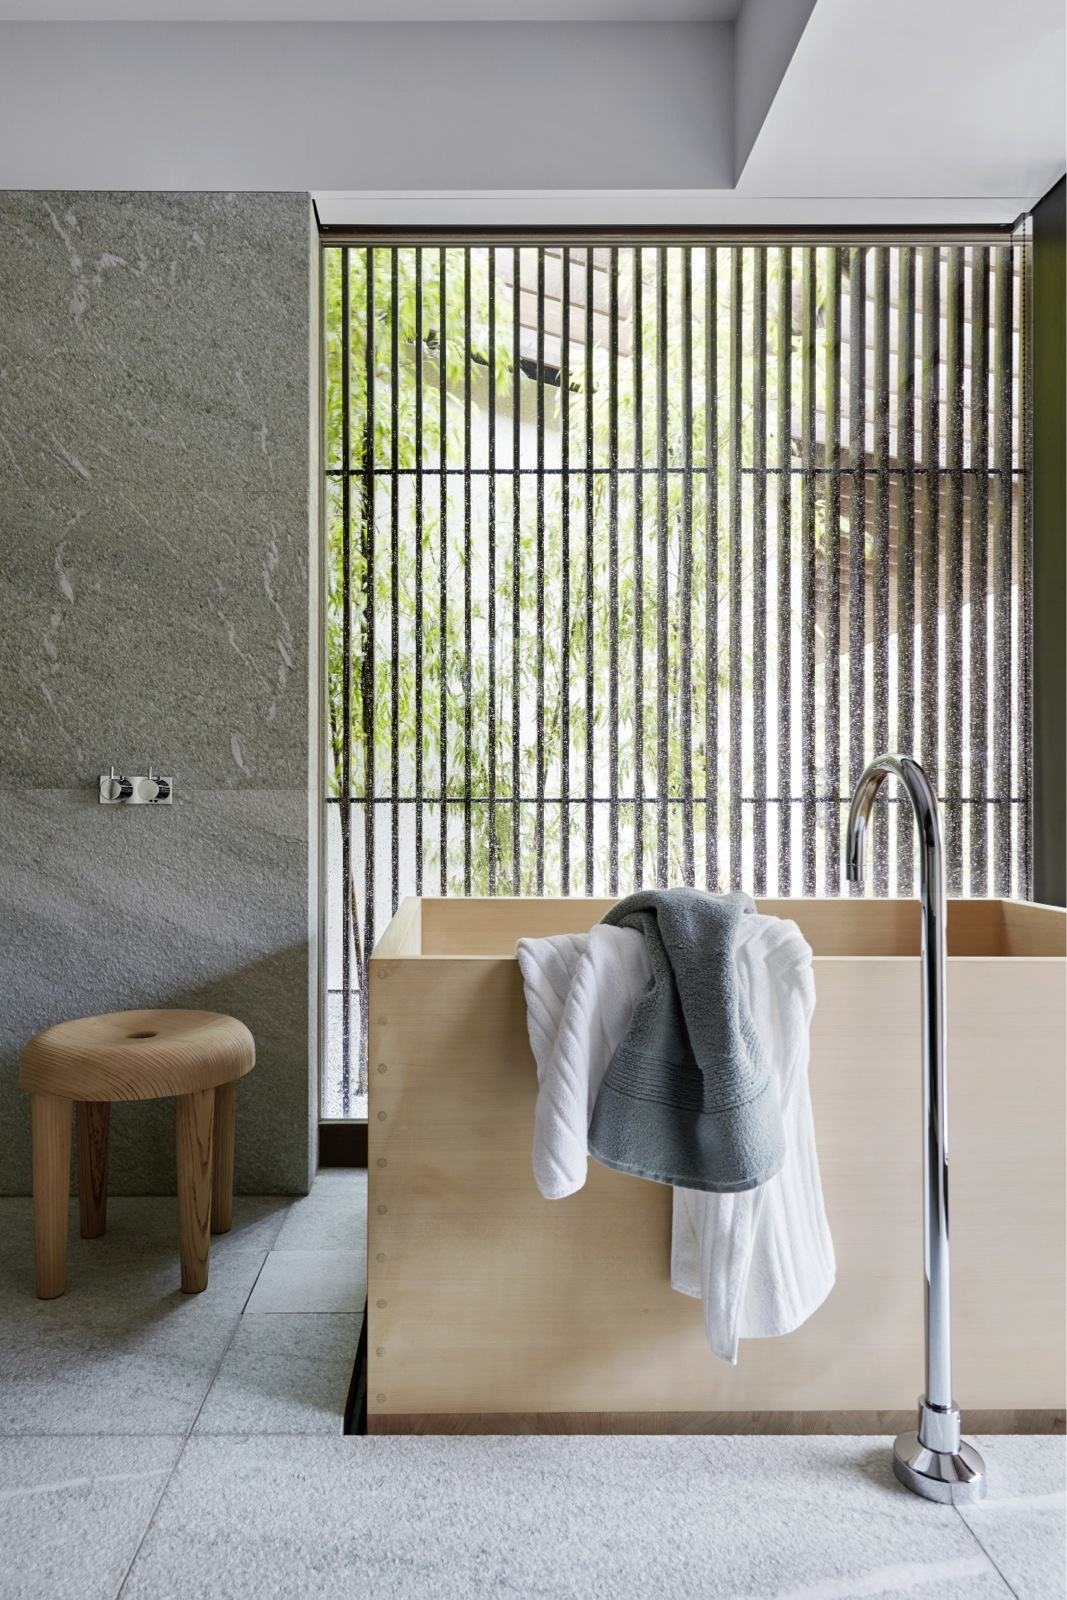 Phòng tắm phong cách tối giản được thực hiện bởi KTS Kengo Kuma và studio thiết kế nội thất Liaigre tại Paris. Chiếc bồn tắm và ghế gỗ giản dị, đằng sau là bức tường với những chấn song nhìn ra khung cảnh tươi xanh nhẹ nhàng, lãng mạn.